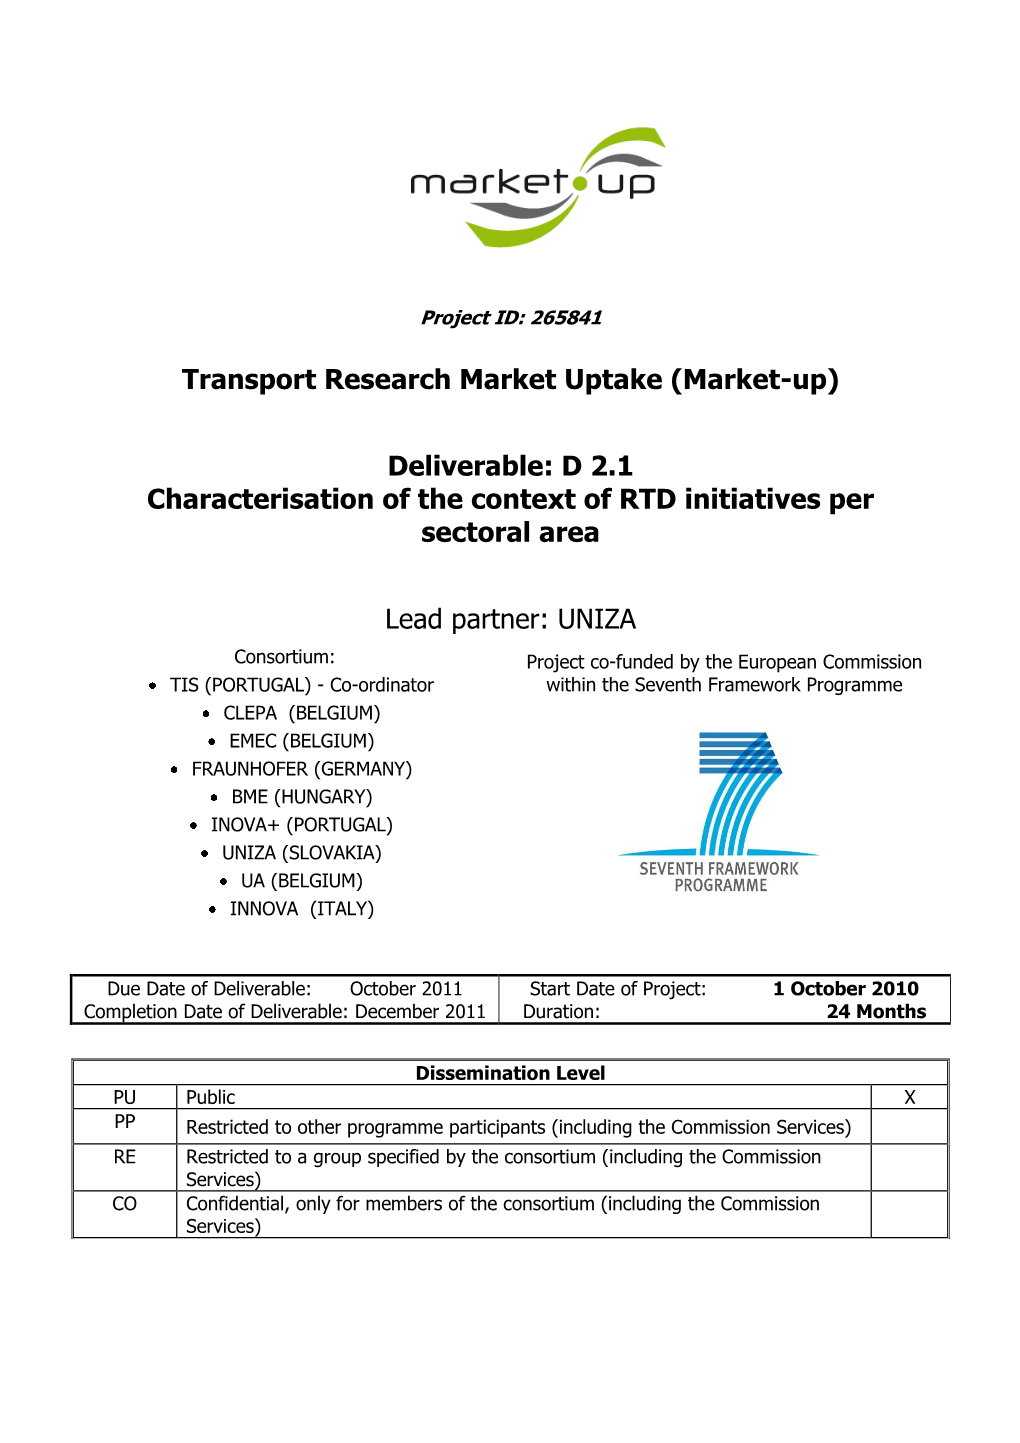 Transport Research Market Uptake (Market-Up) Deliverable: D 2.1